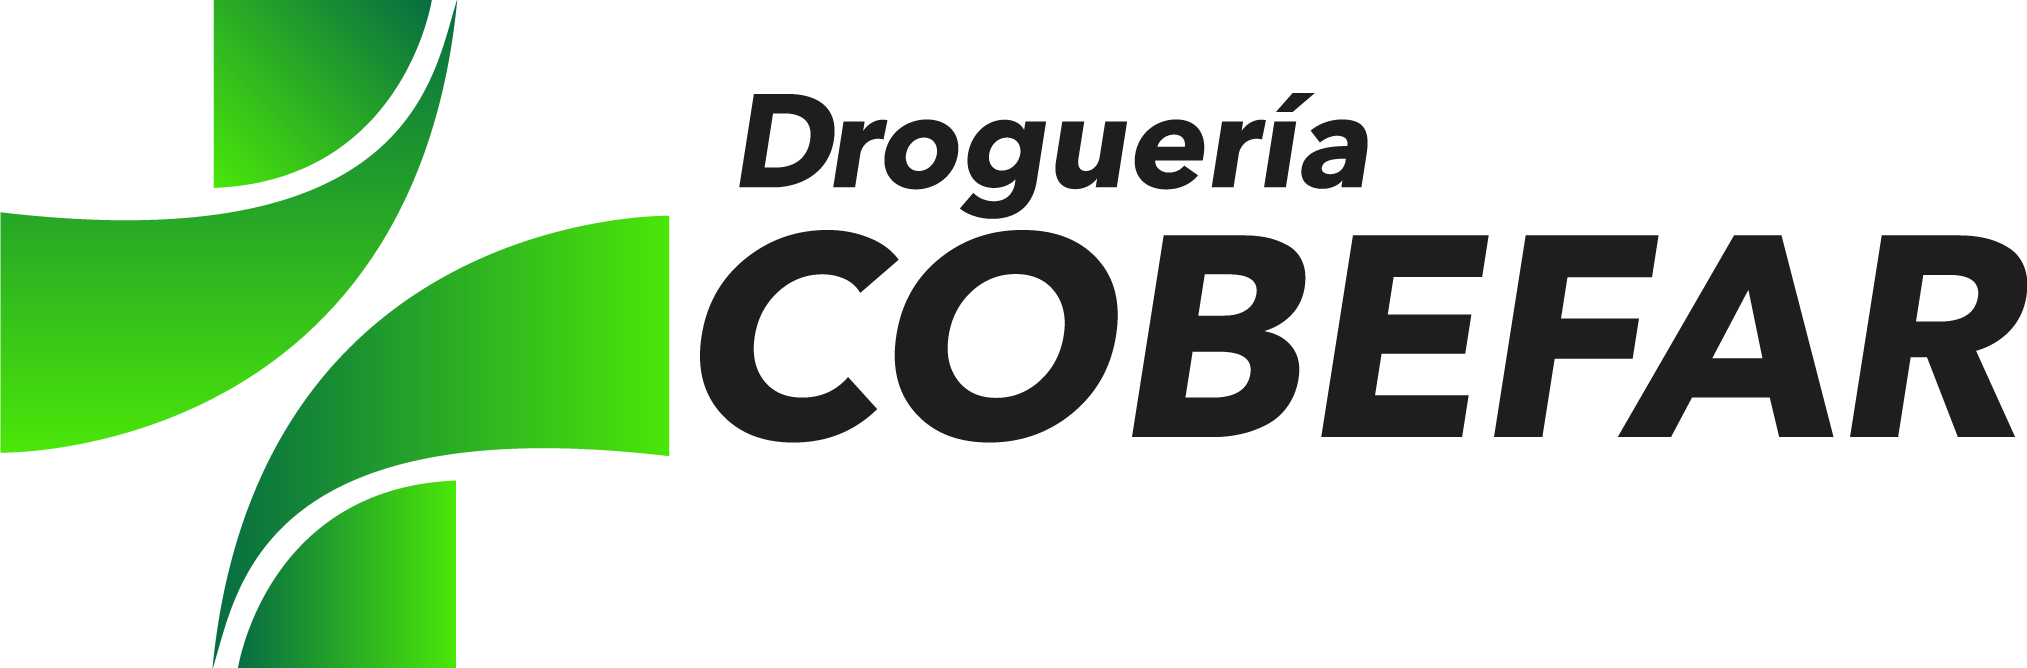 Drogueria Cobefar